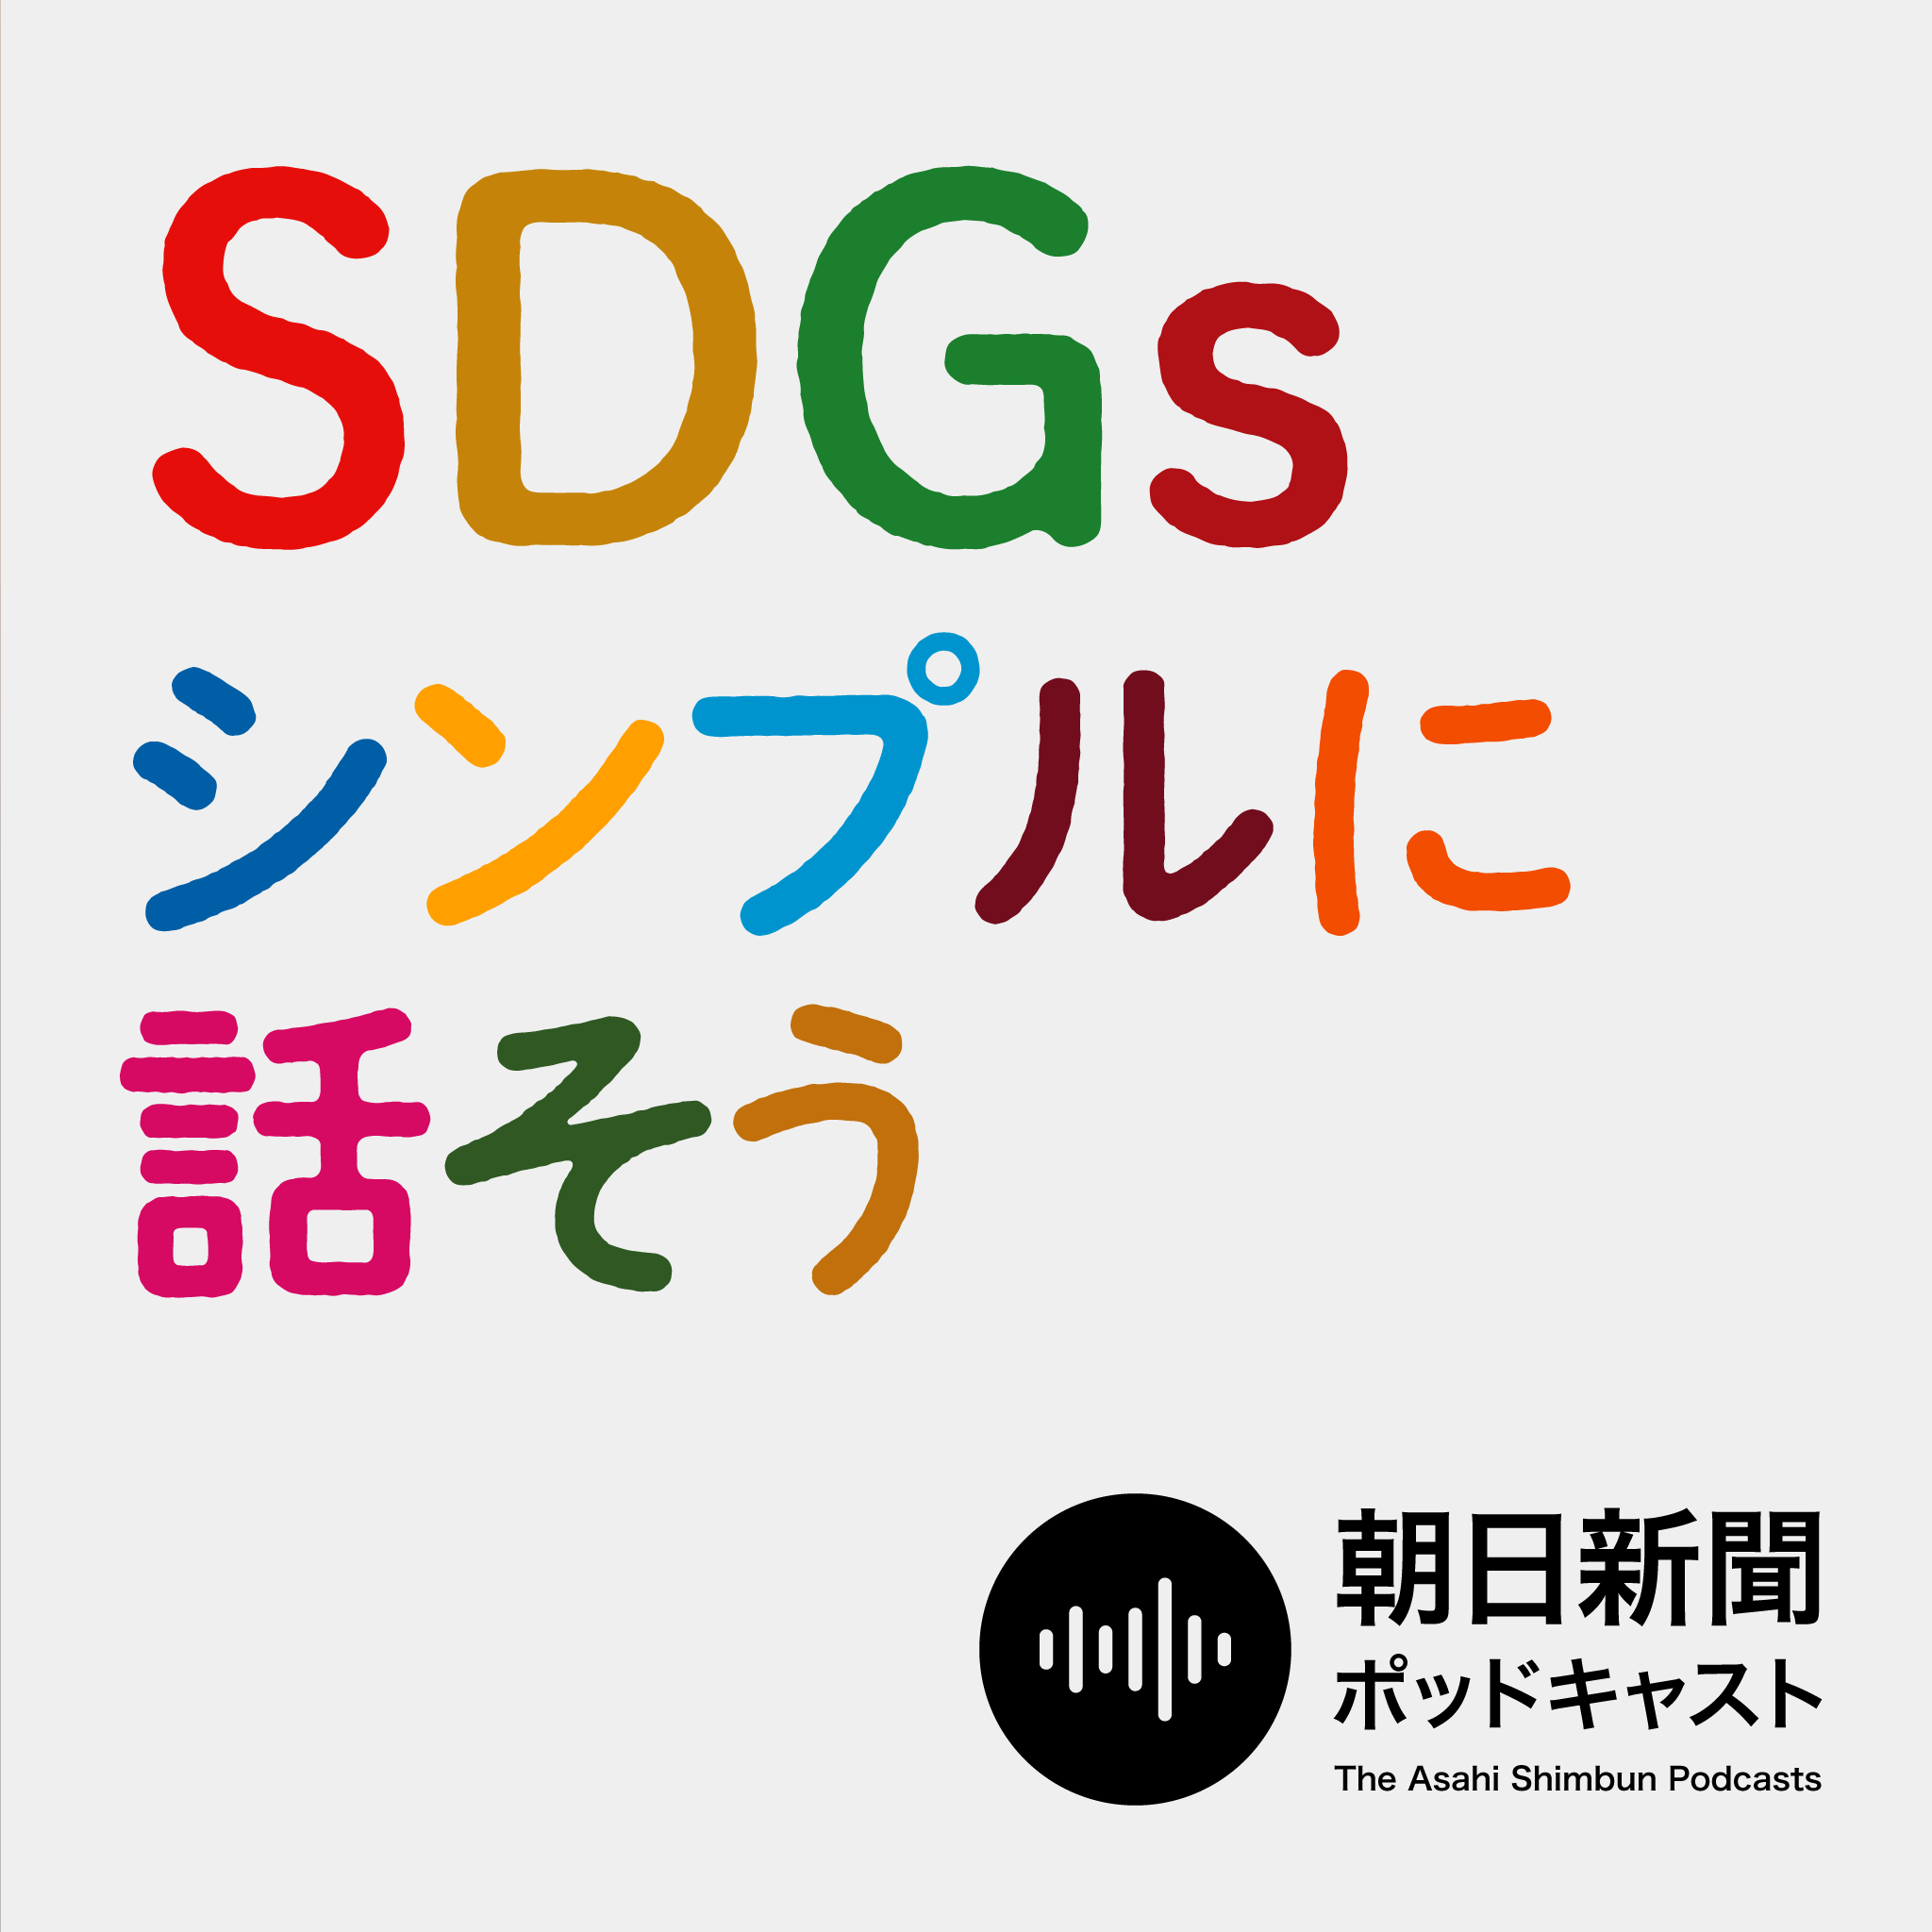 朝日新聞ポッドキャスト 新番組『SDGs シンプルに話そう』を配信｜株式会社朝日新聞社のプレスリリース